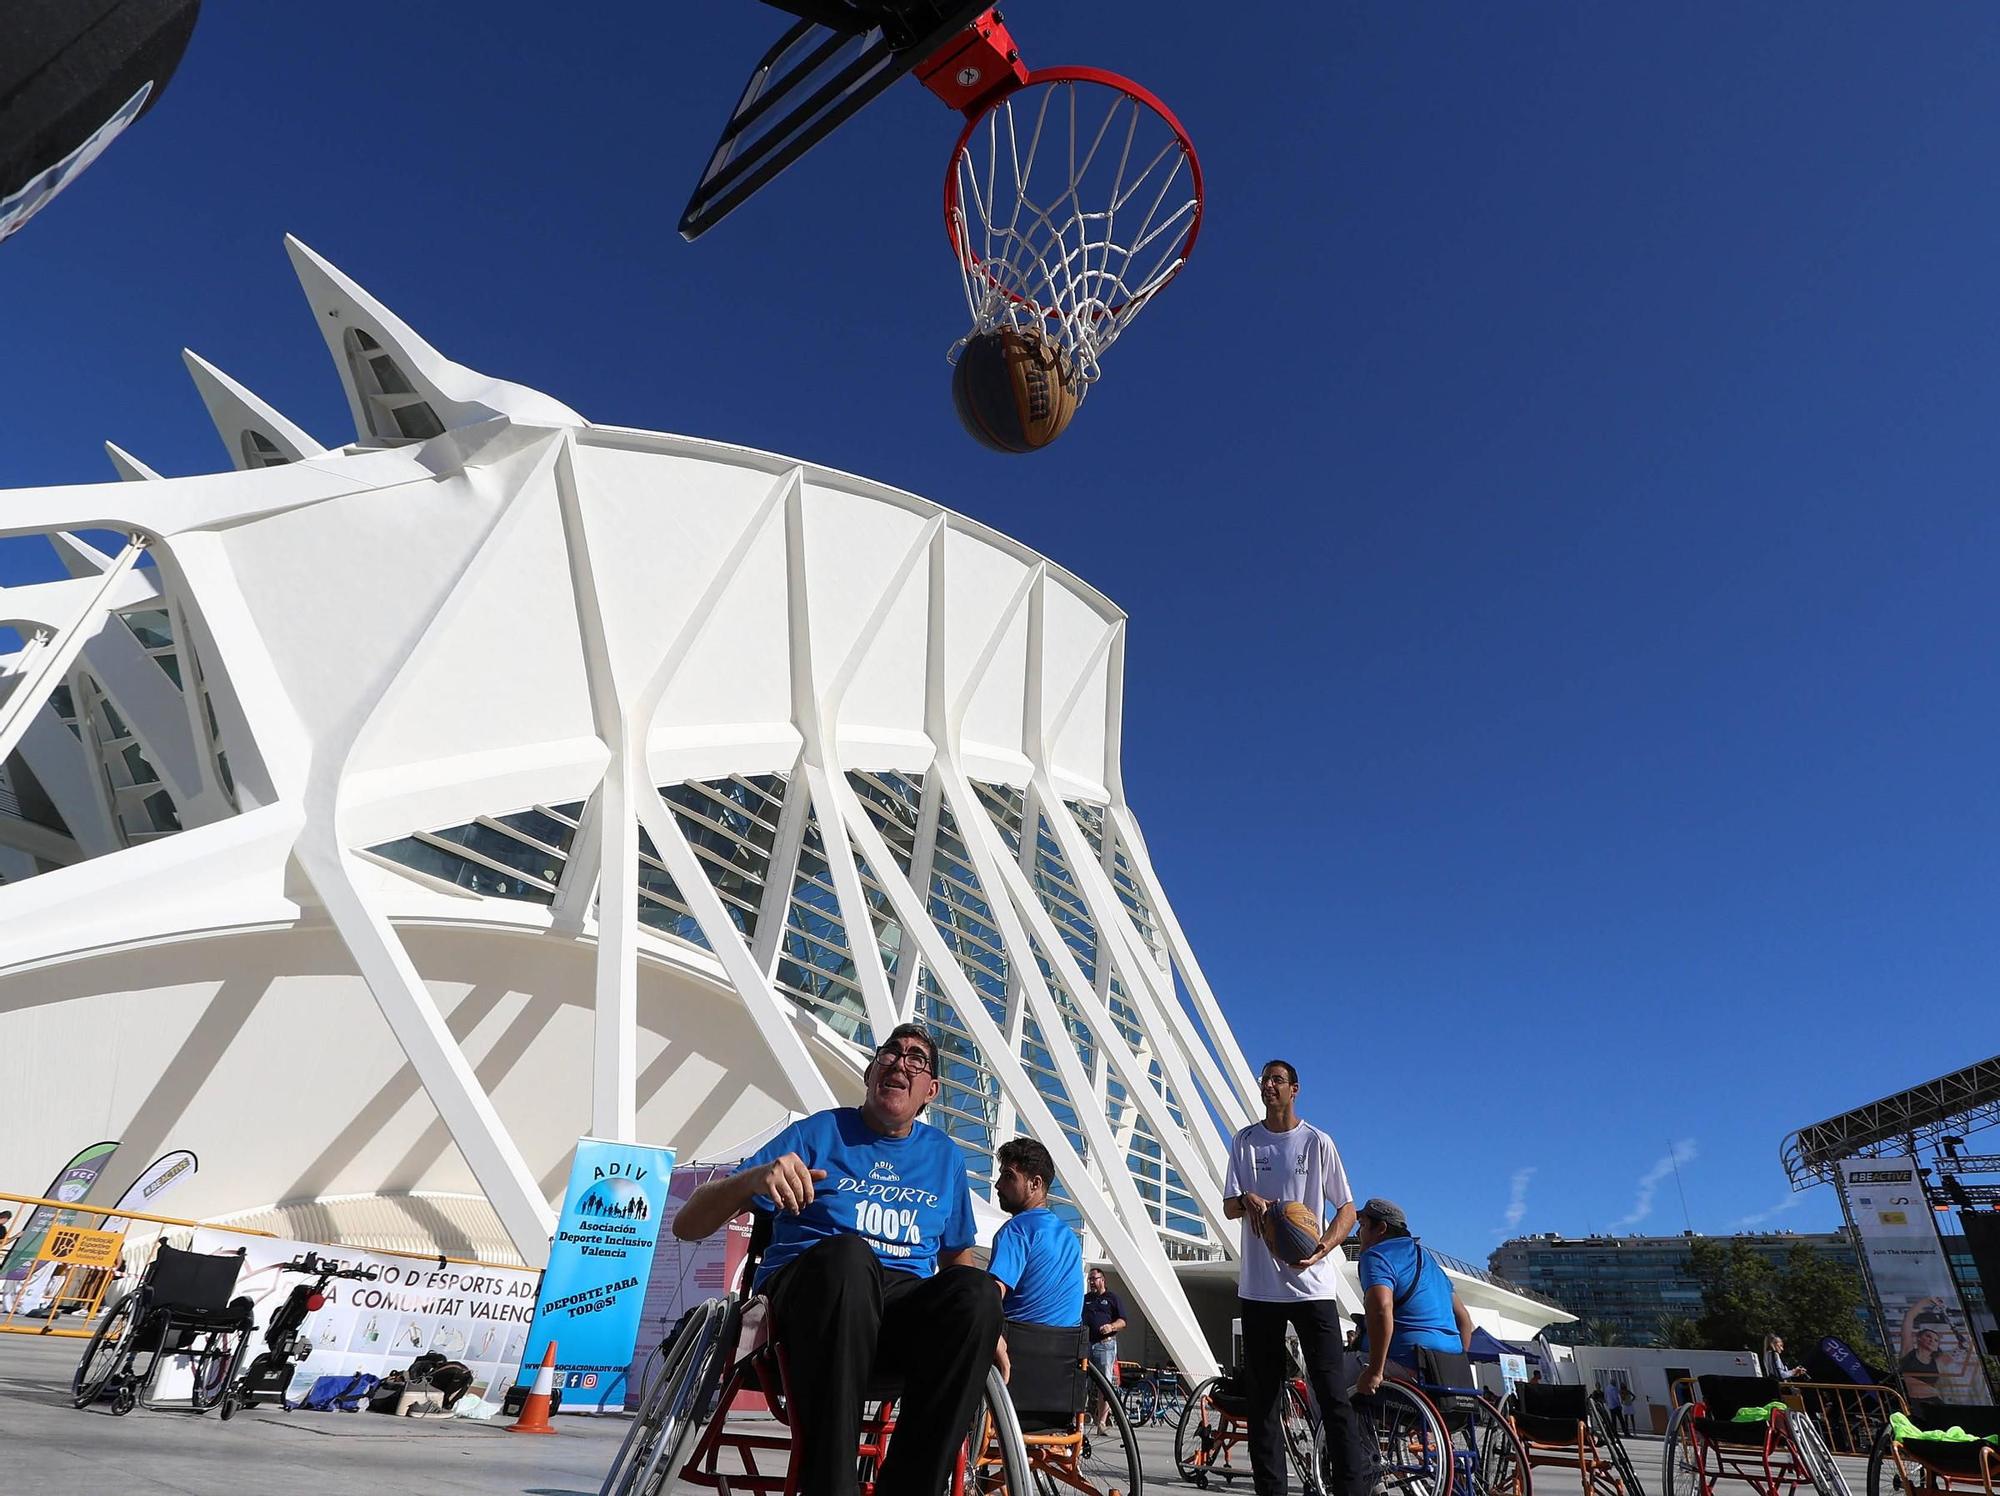 Nationale-Nederlanden Plogging Tour en Valencia que inaugura la Semana Europea del Deporte